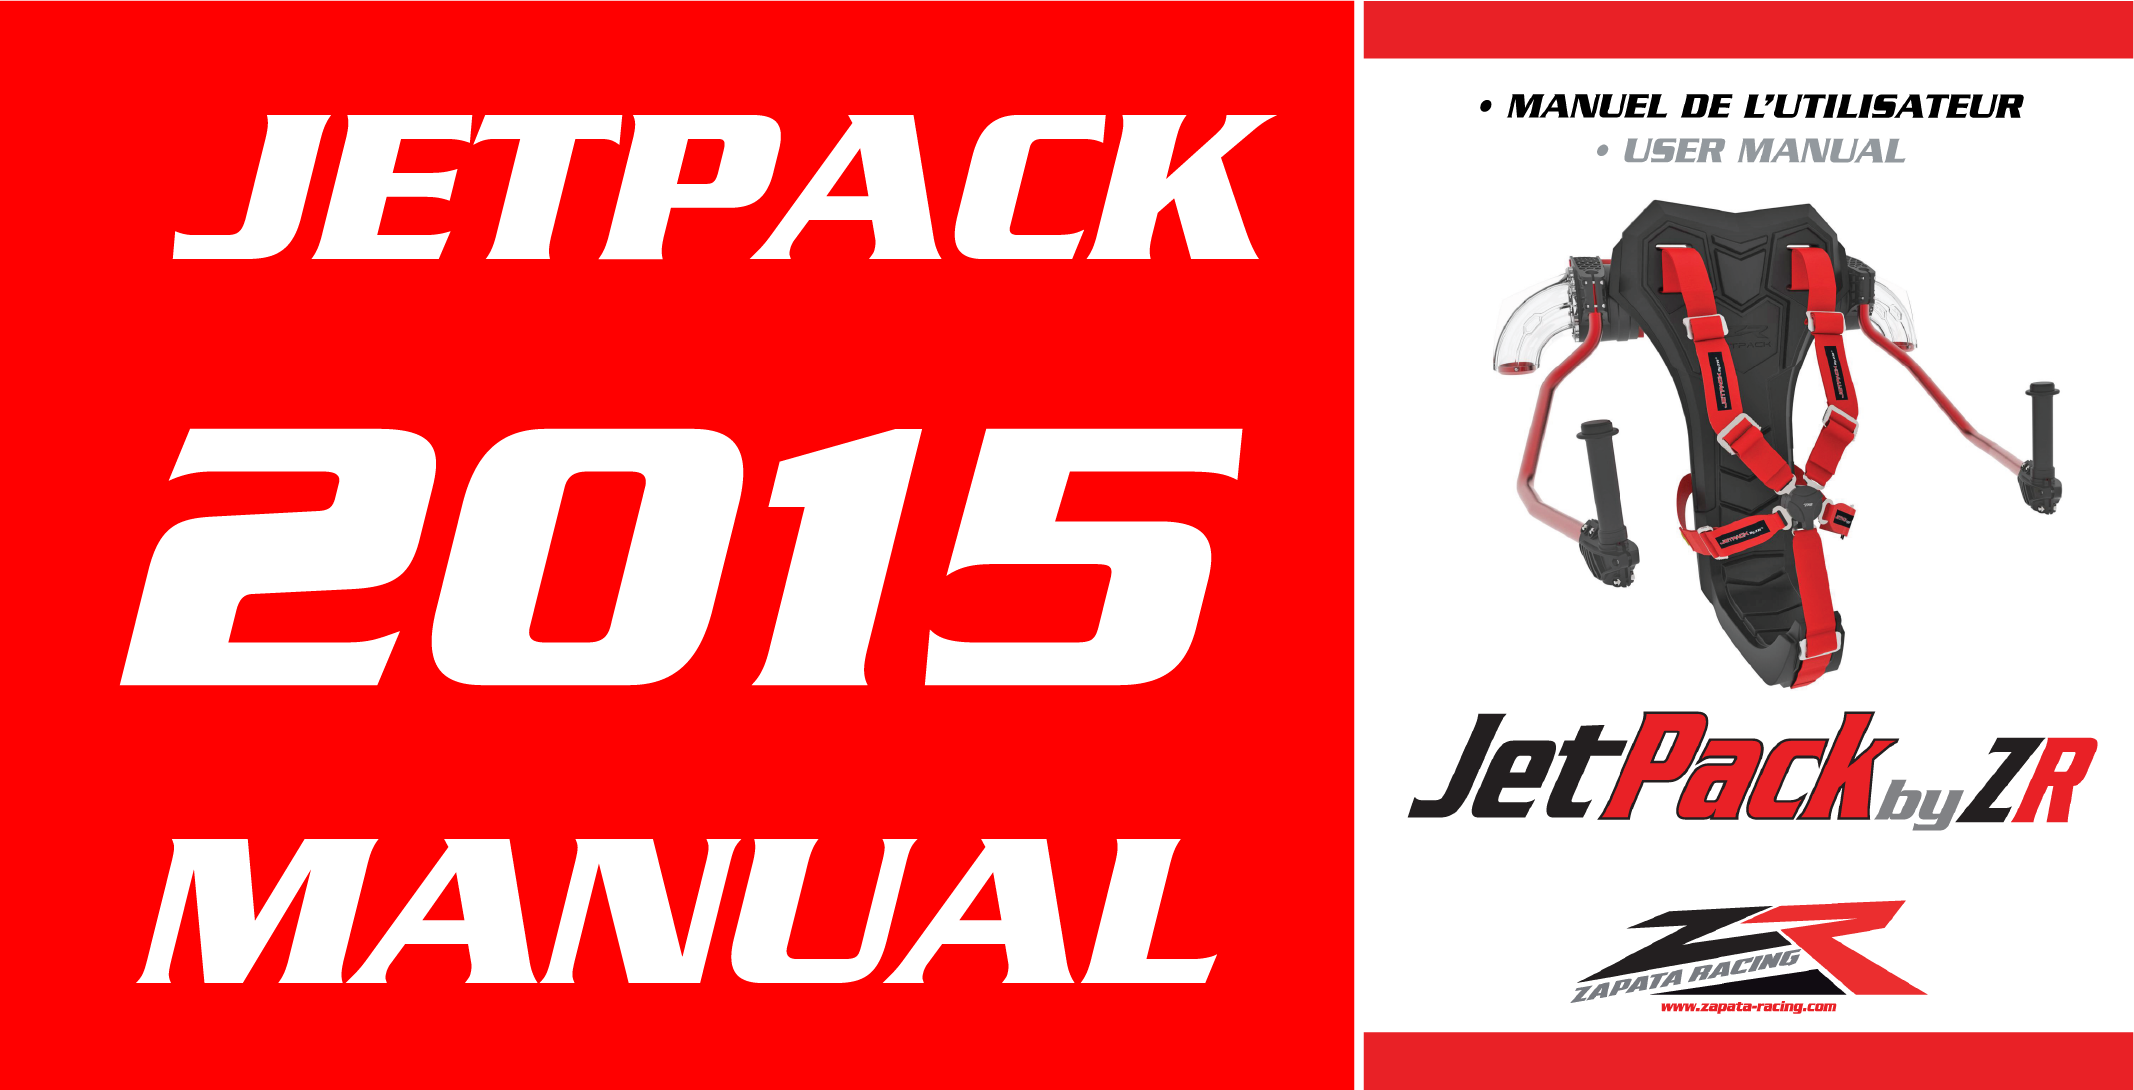 JETPACK BY ZR V1 2015 MANUAL DOWNLOAD